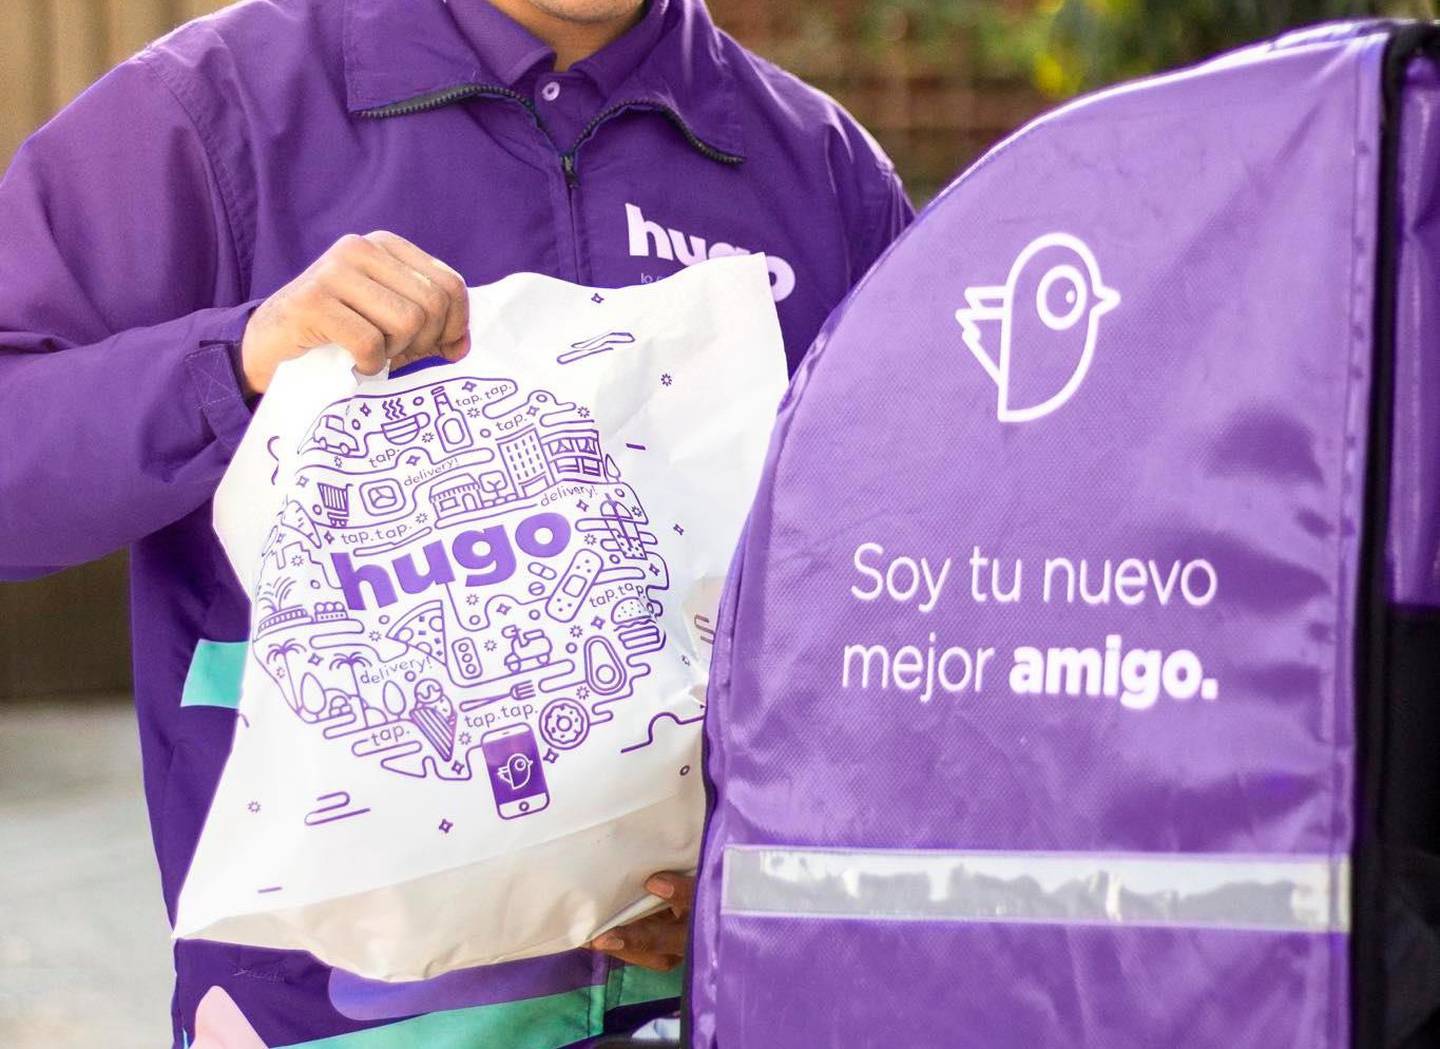 Hugo App nació en El Salvador y se expandió a más mercados de la región.